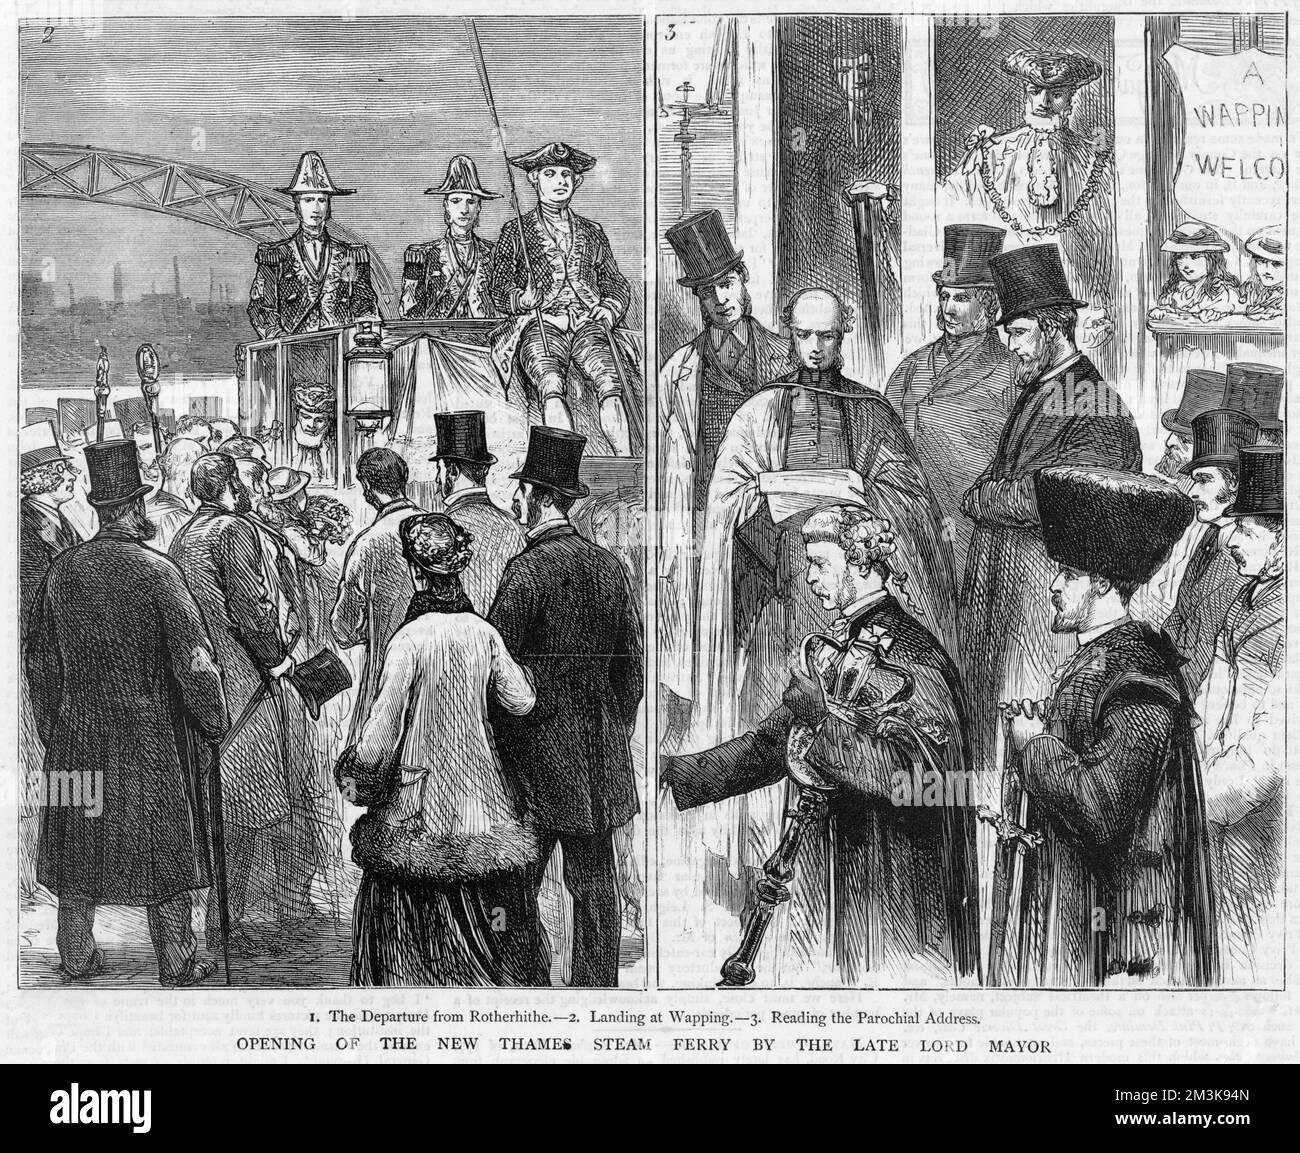 Apertura del traghetto Rotherhithe da parte del compianto Lord Mayor di Londra. 1877 Foto Stock